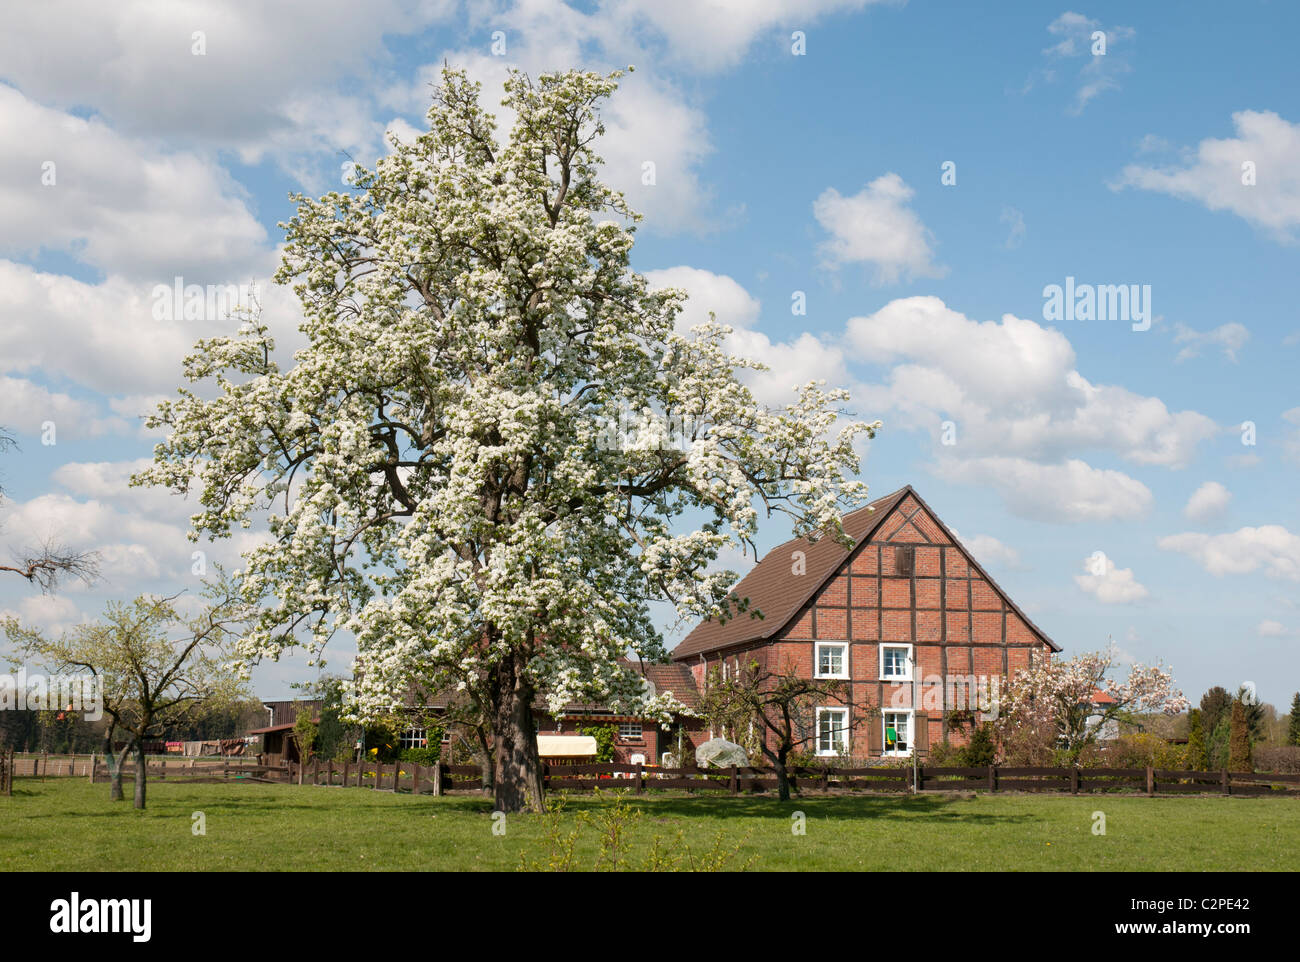 Ferme en Westphalie avec un arbre fleurissant Westfälischer Bauernhof im Frühling Banque D'Images